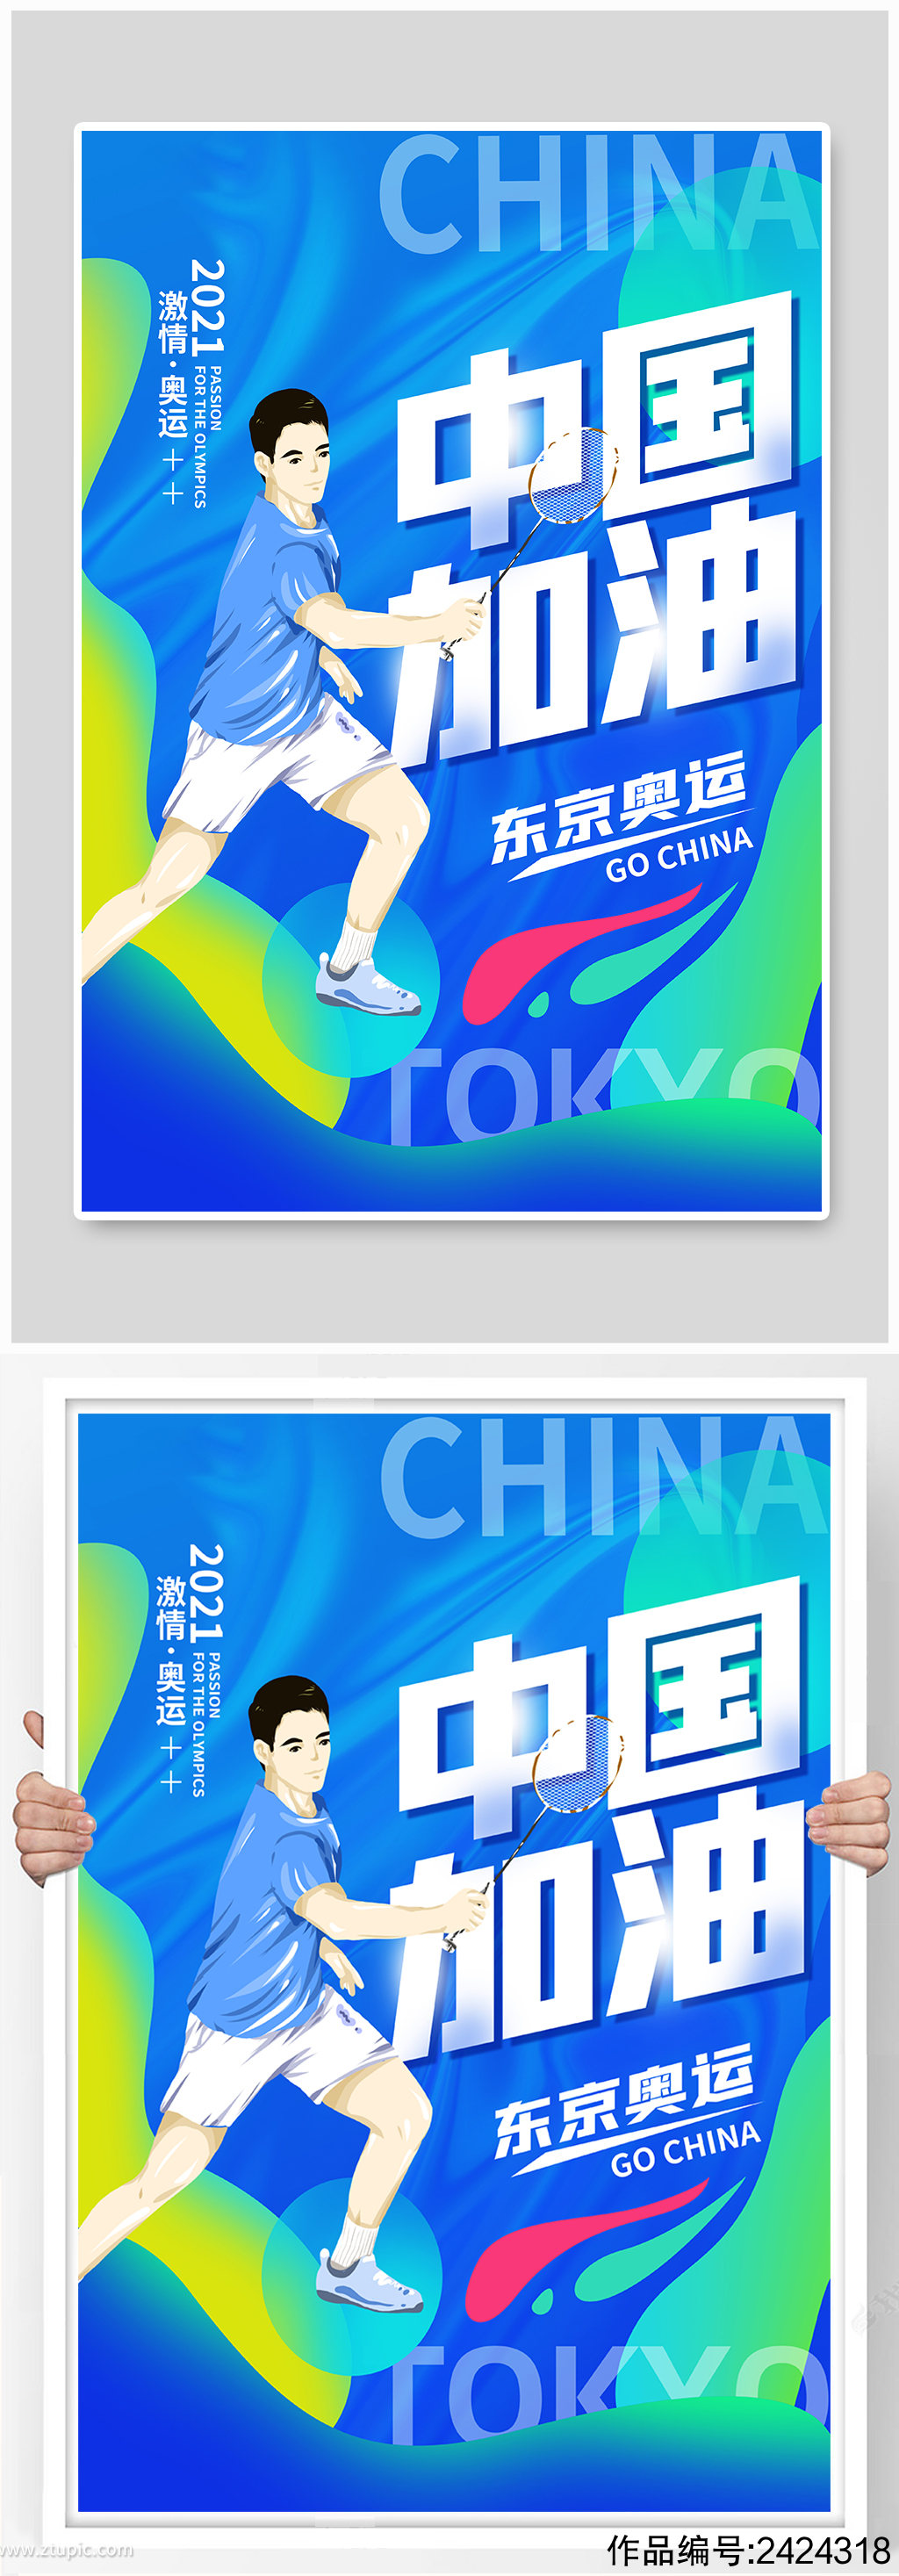 奥运东京奥运羽毛球运动员蓝色手绘海报